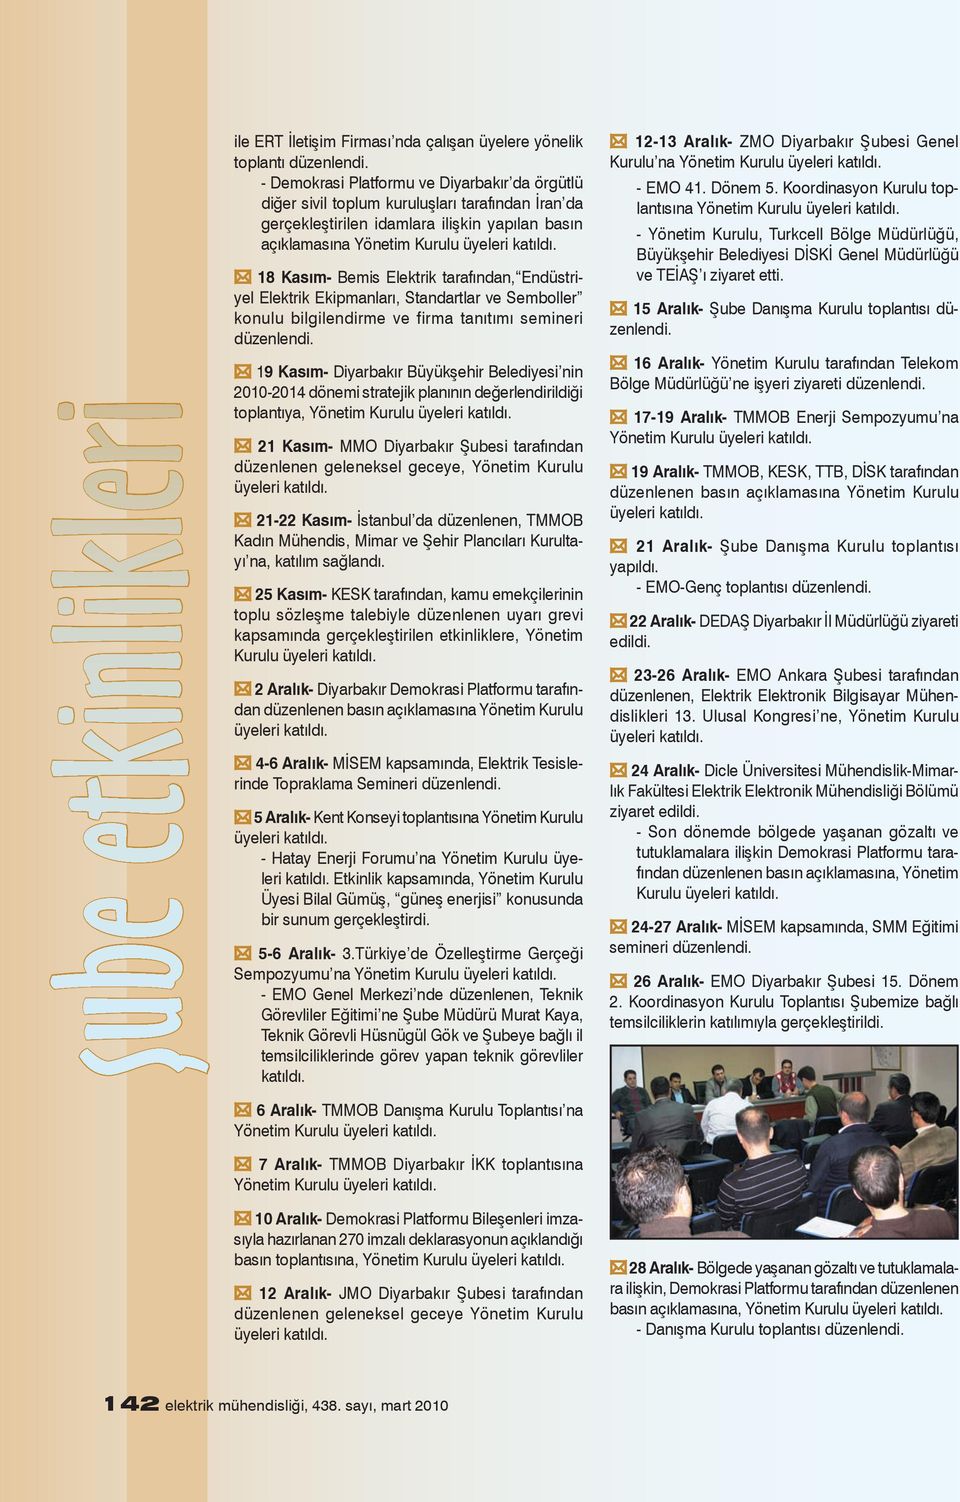 Büyükşehir Belediyesi nin -2014 dönemi stratejik planının değerlendirildiği toplantıya, 21 Kasım- MMO Diyarbakır Şubesi tarafından düzenlenen geleneksel geceye, Yönetim Kurulu 21-22 Kasım- İstanbul